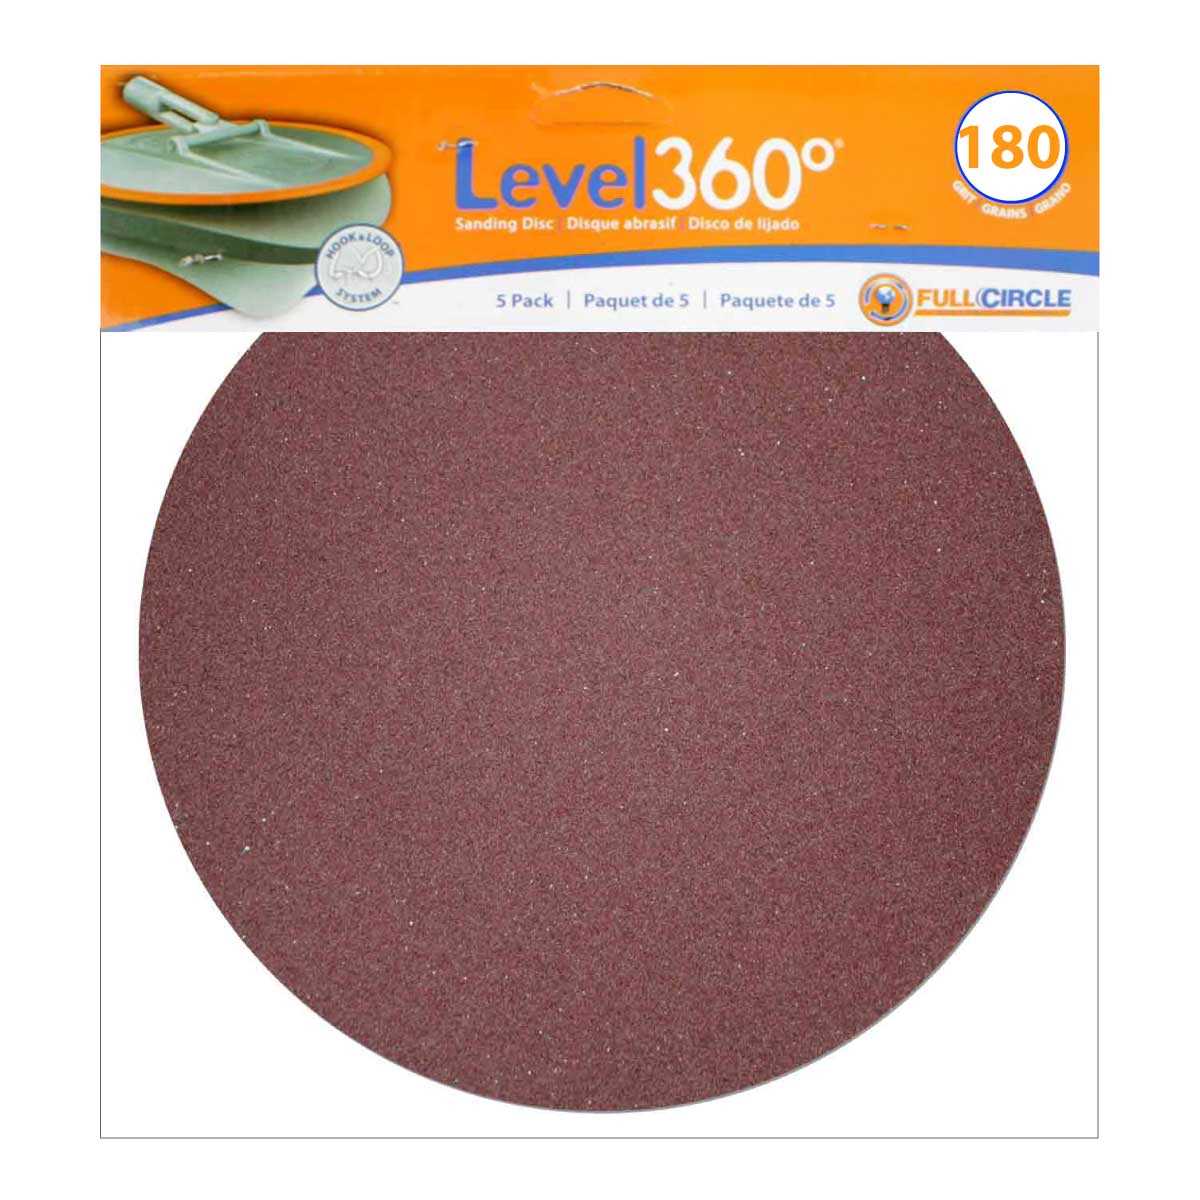 Level 360 Sanding Discs 180